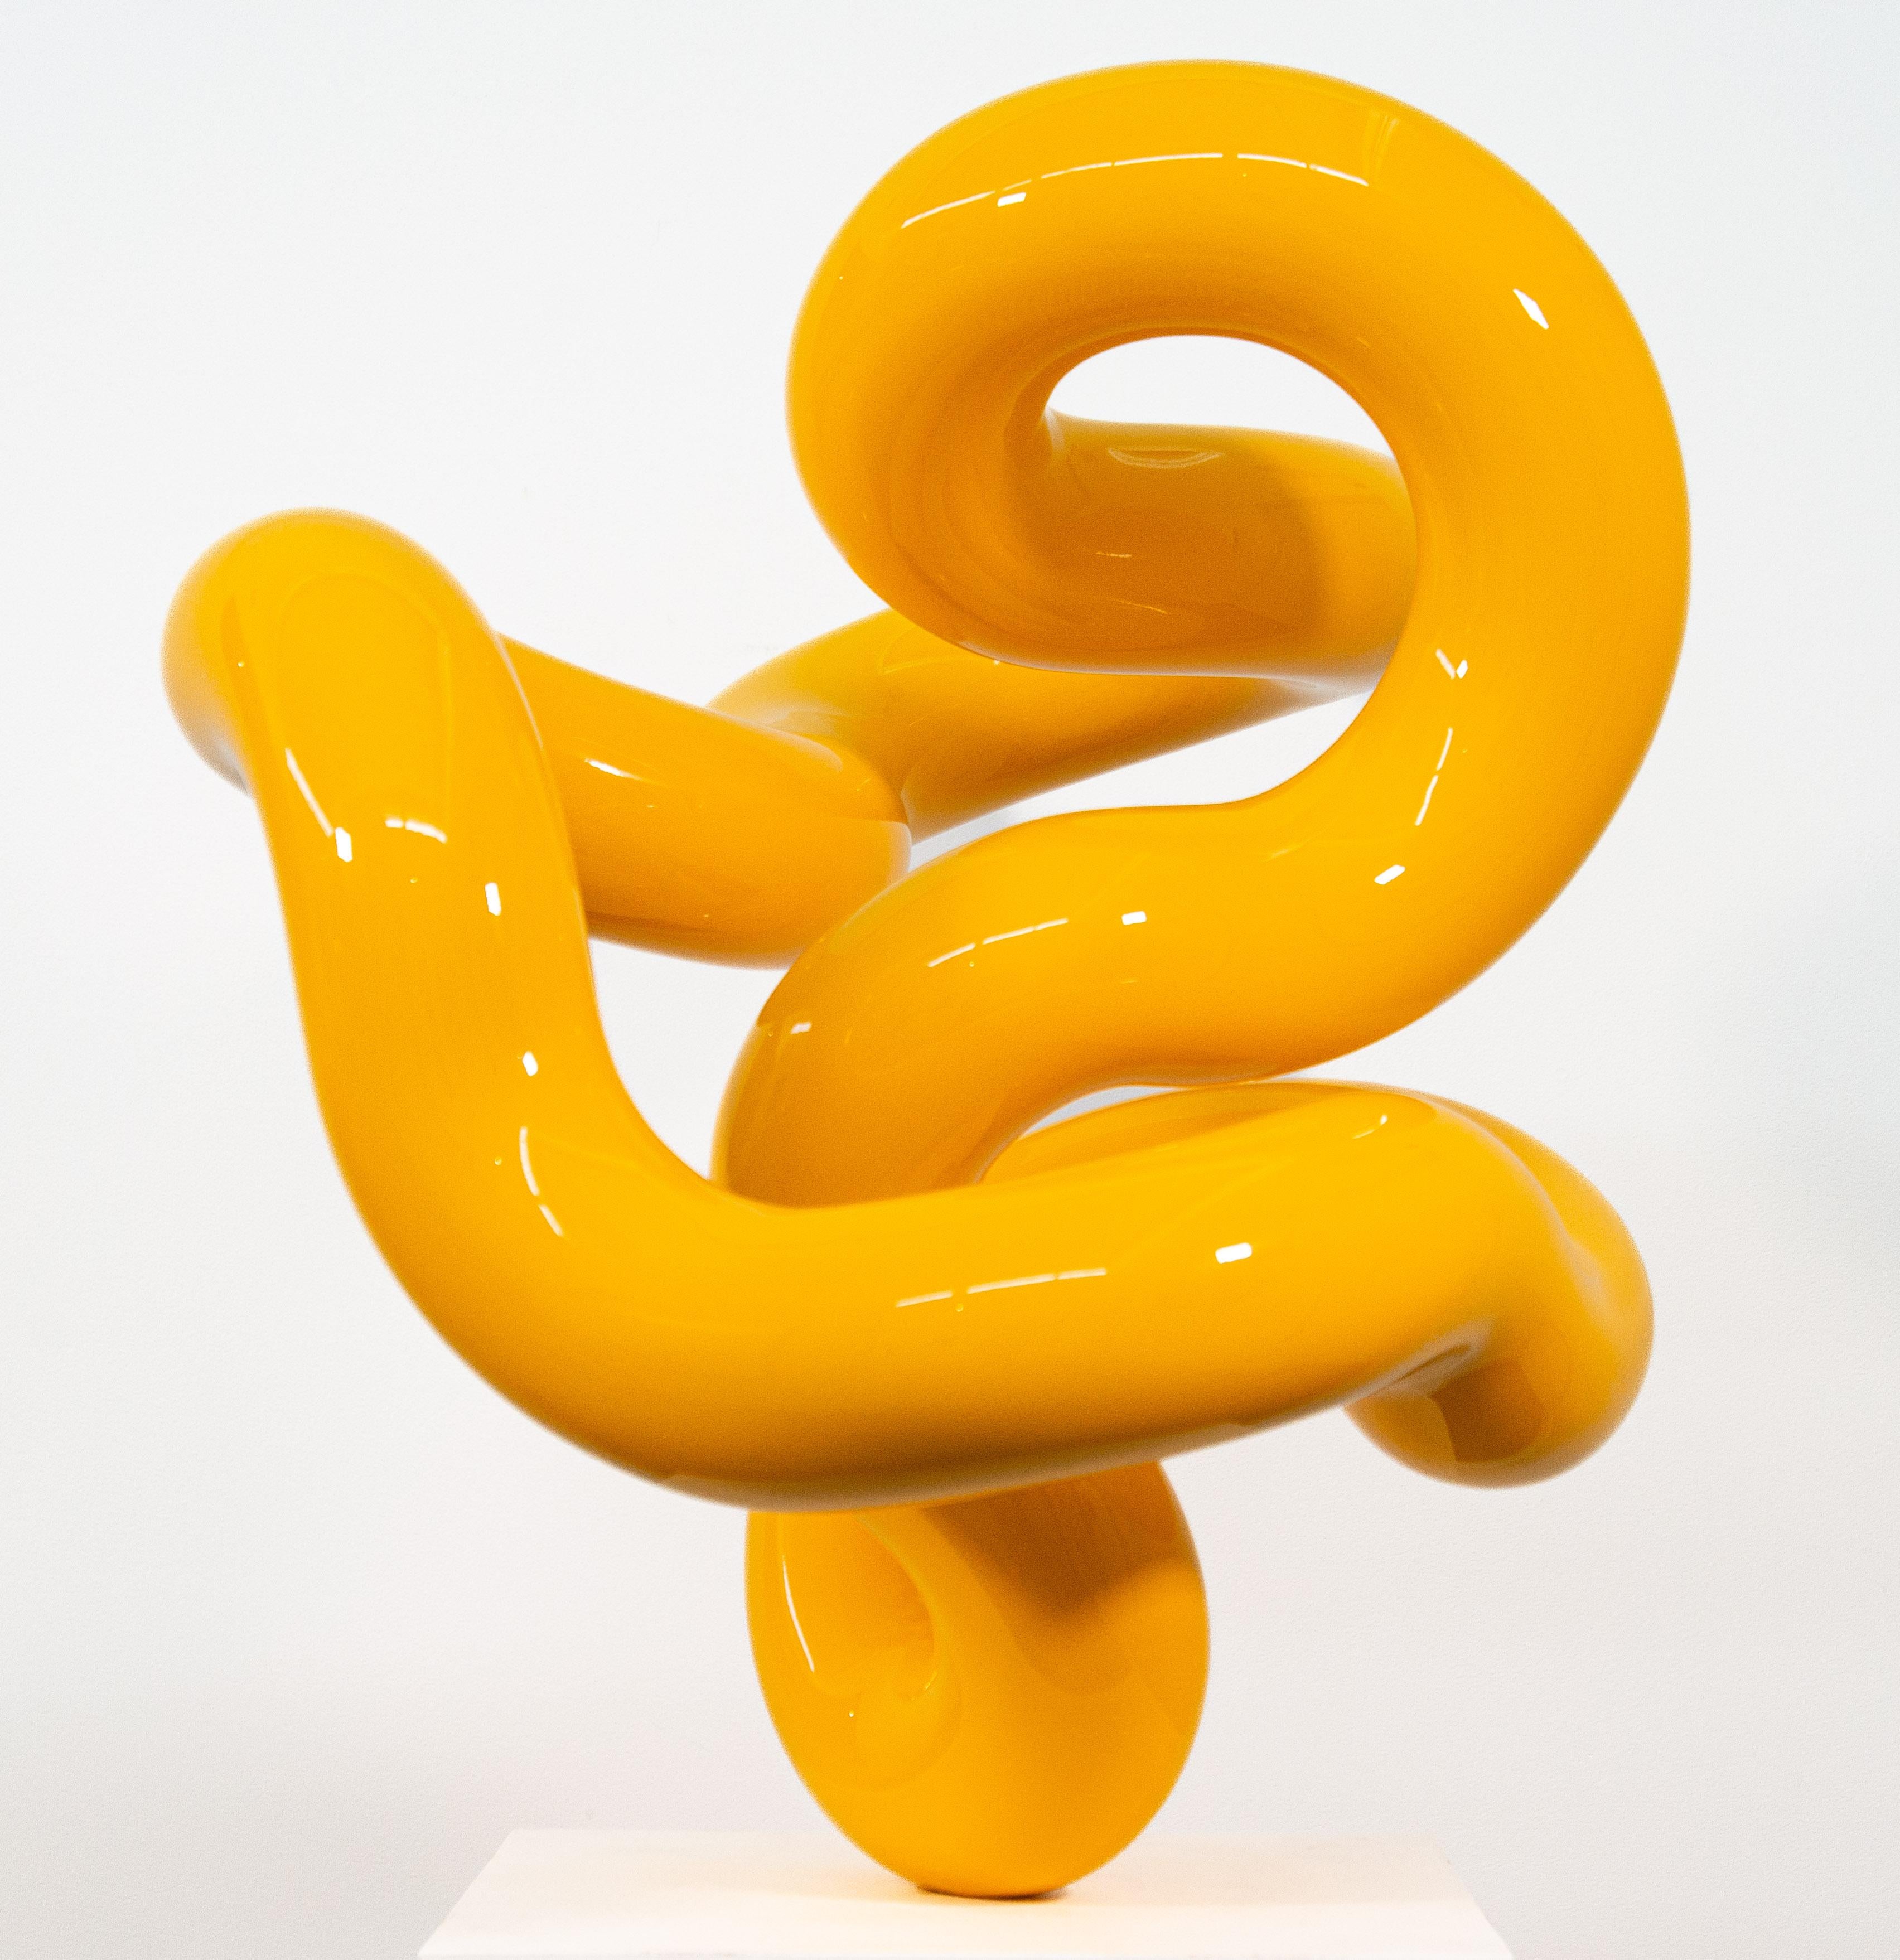 Circuit jaune - sculpture en acier inoxydable poli, abstraite et peinte - Abstrait Sculpture par Alexander Caldwell